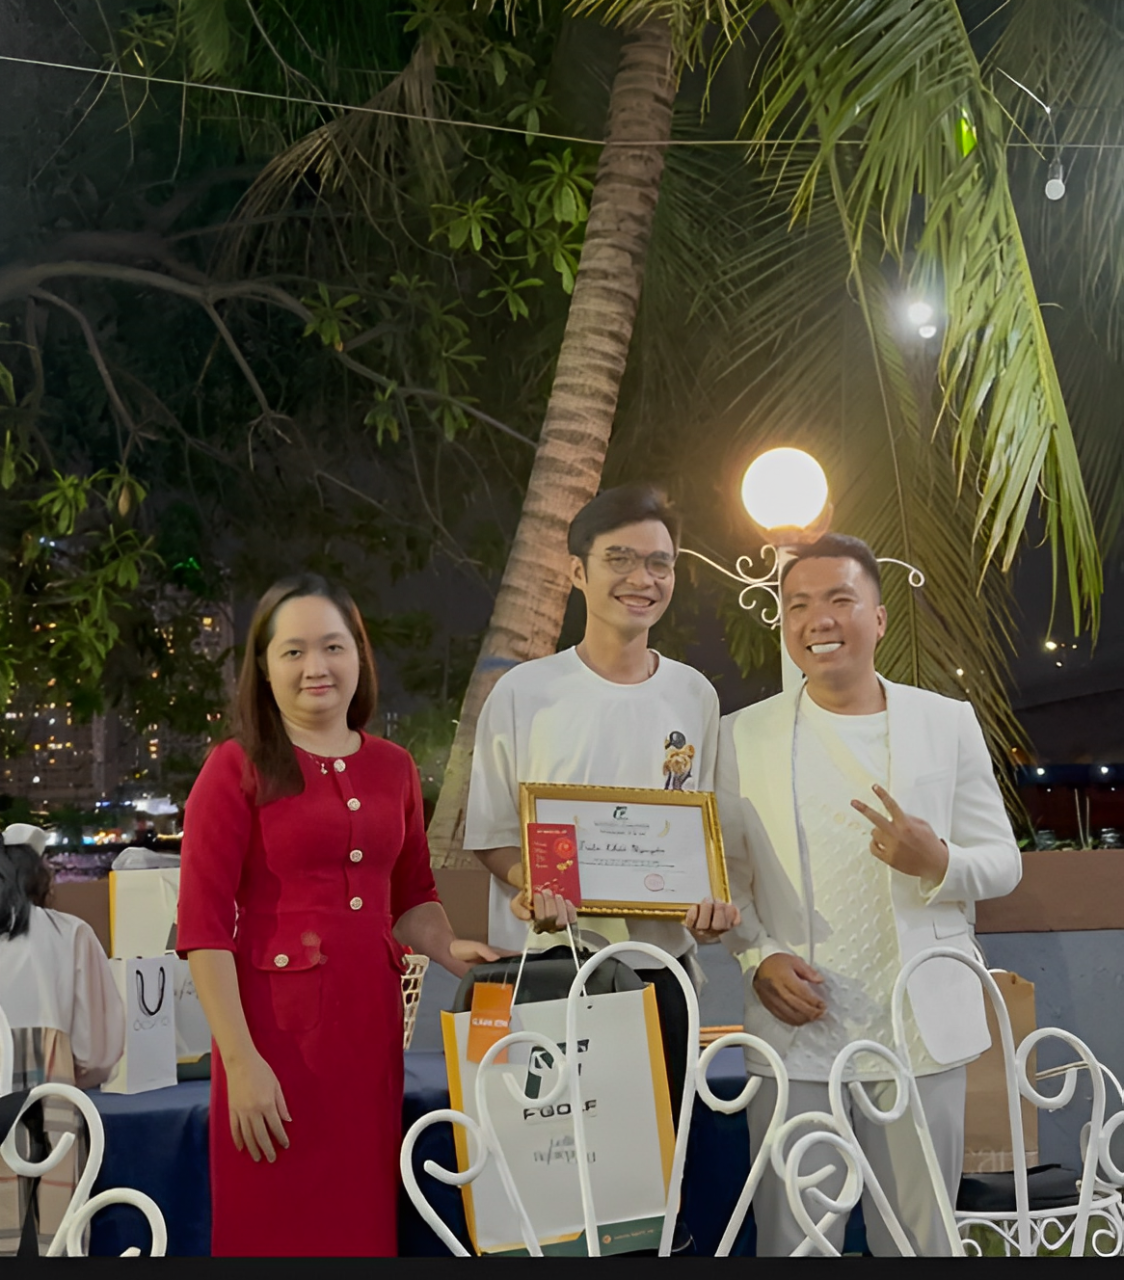 Trần Khôi Nguyên - Chuyên viên có thành tích xuất sắc nhất về số lượng mời nhà tài trợ cho các giải đấu do FGOLF tổ chức. 